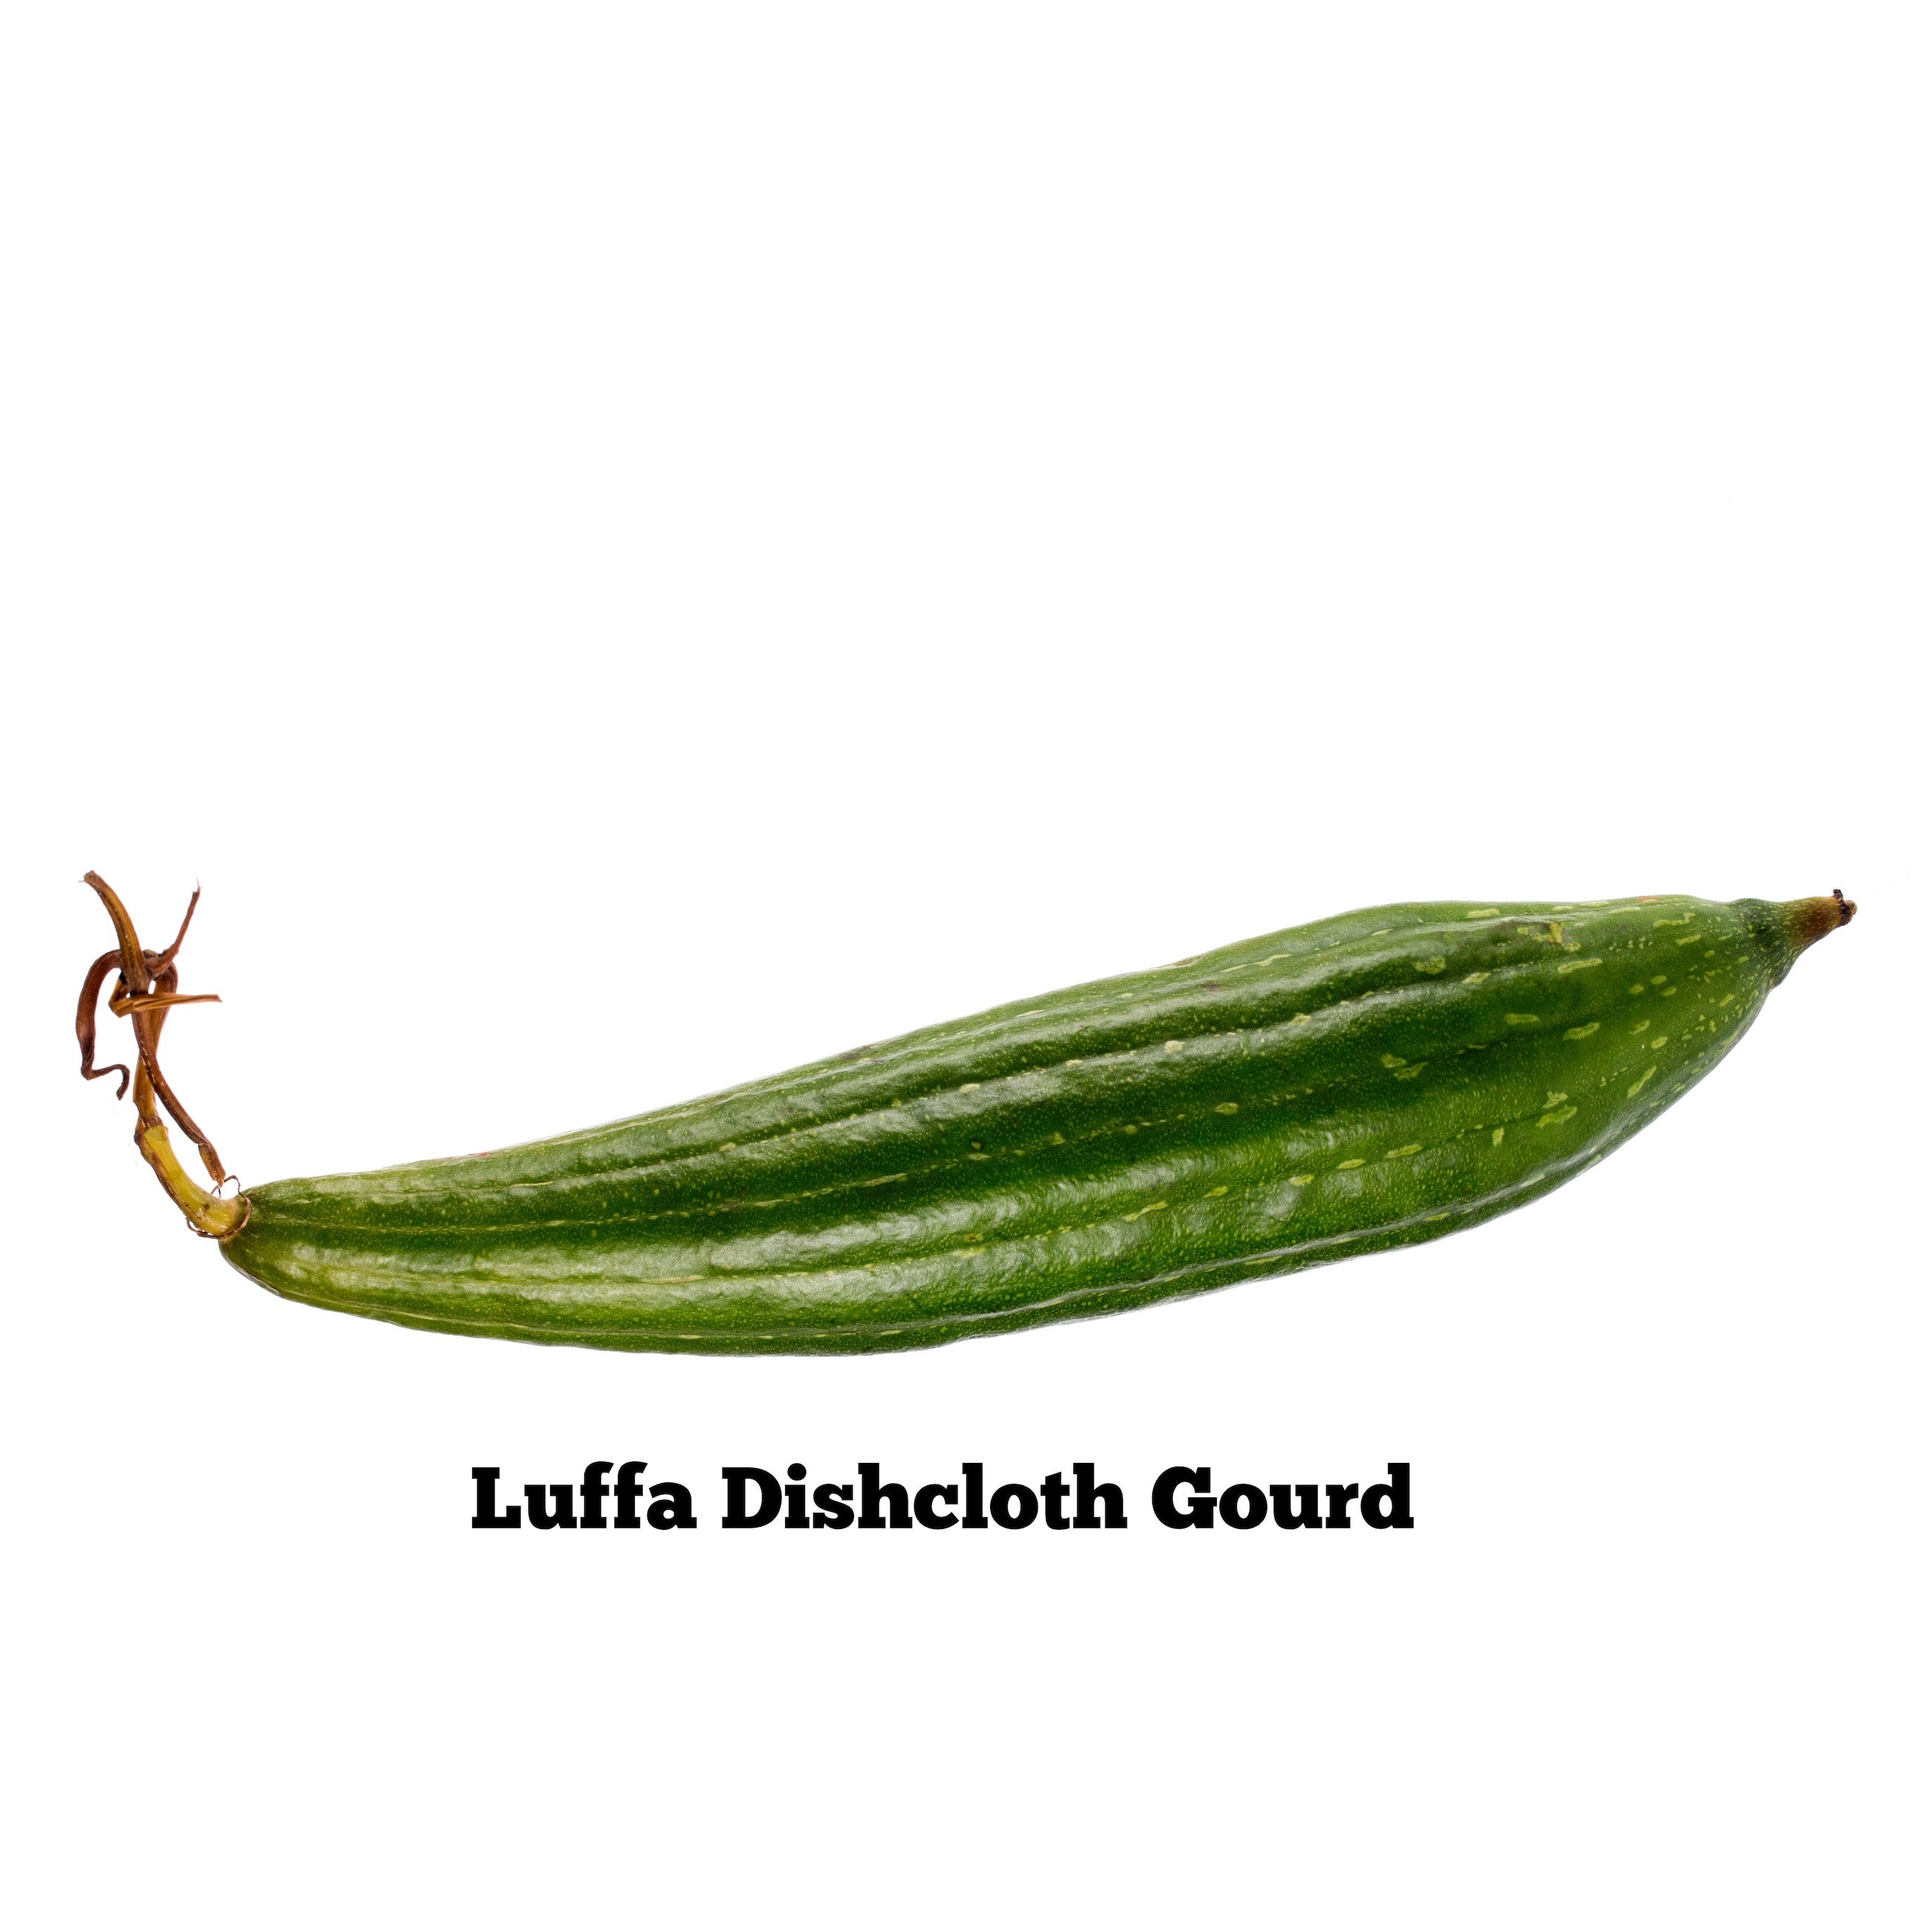 Luffa Dishcloth Gourd Seeds